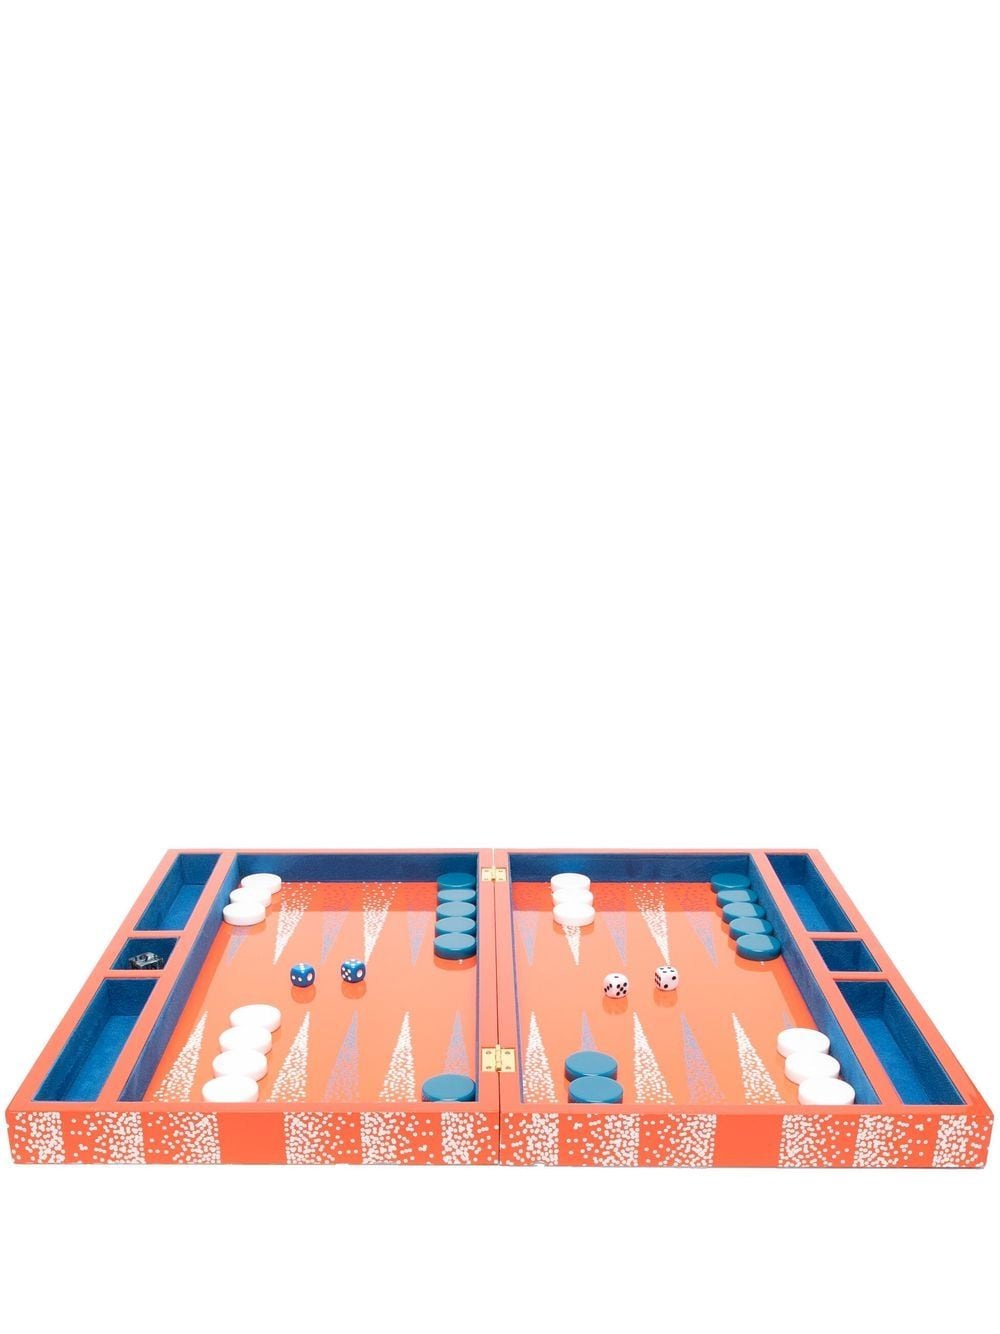 Jonathan Adler Vapor backgammon set - Orange von Jonathan Adler